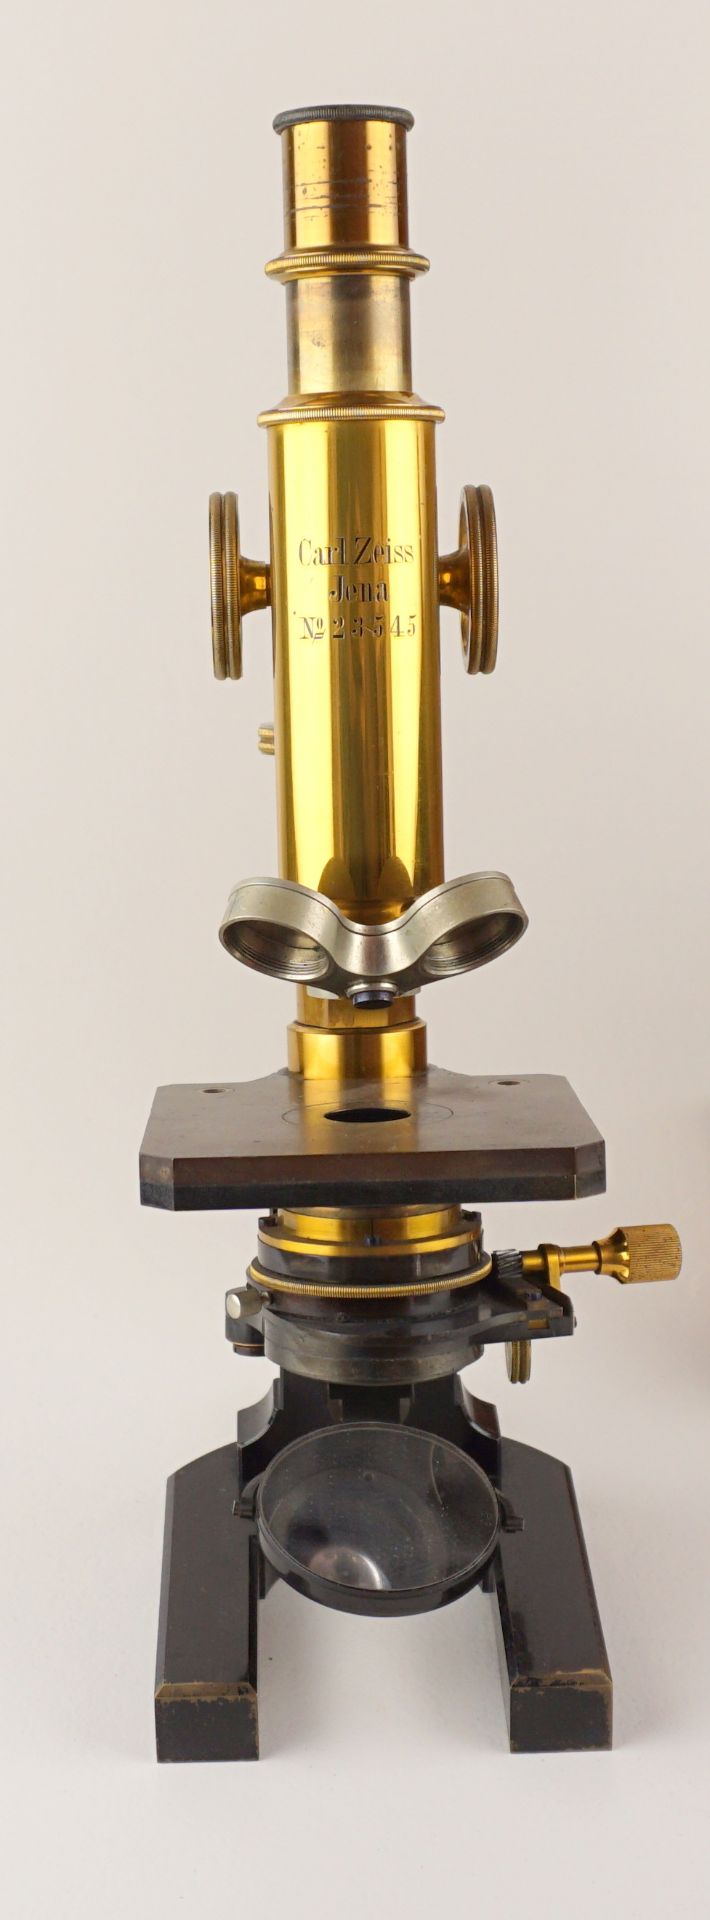 Mikroskop, Carl Zeiss, Jena, um 1890 - Image 2 of 5